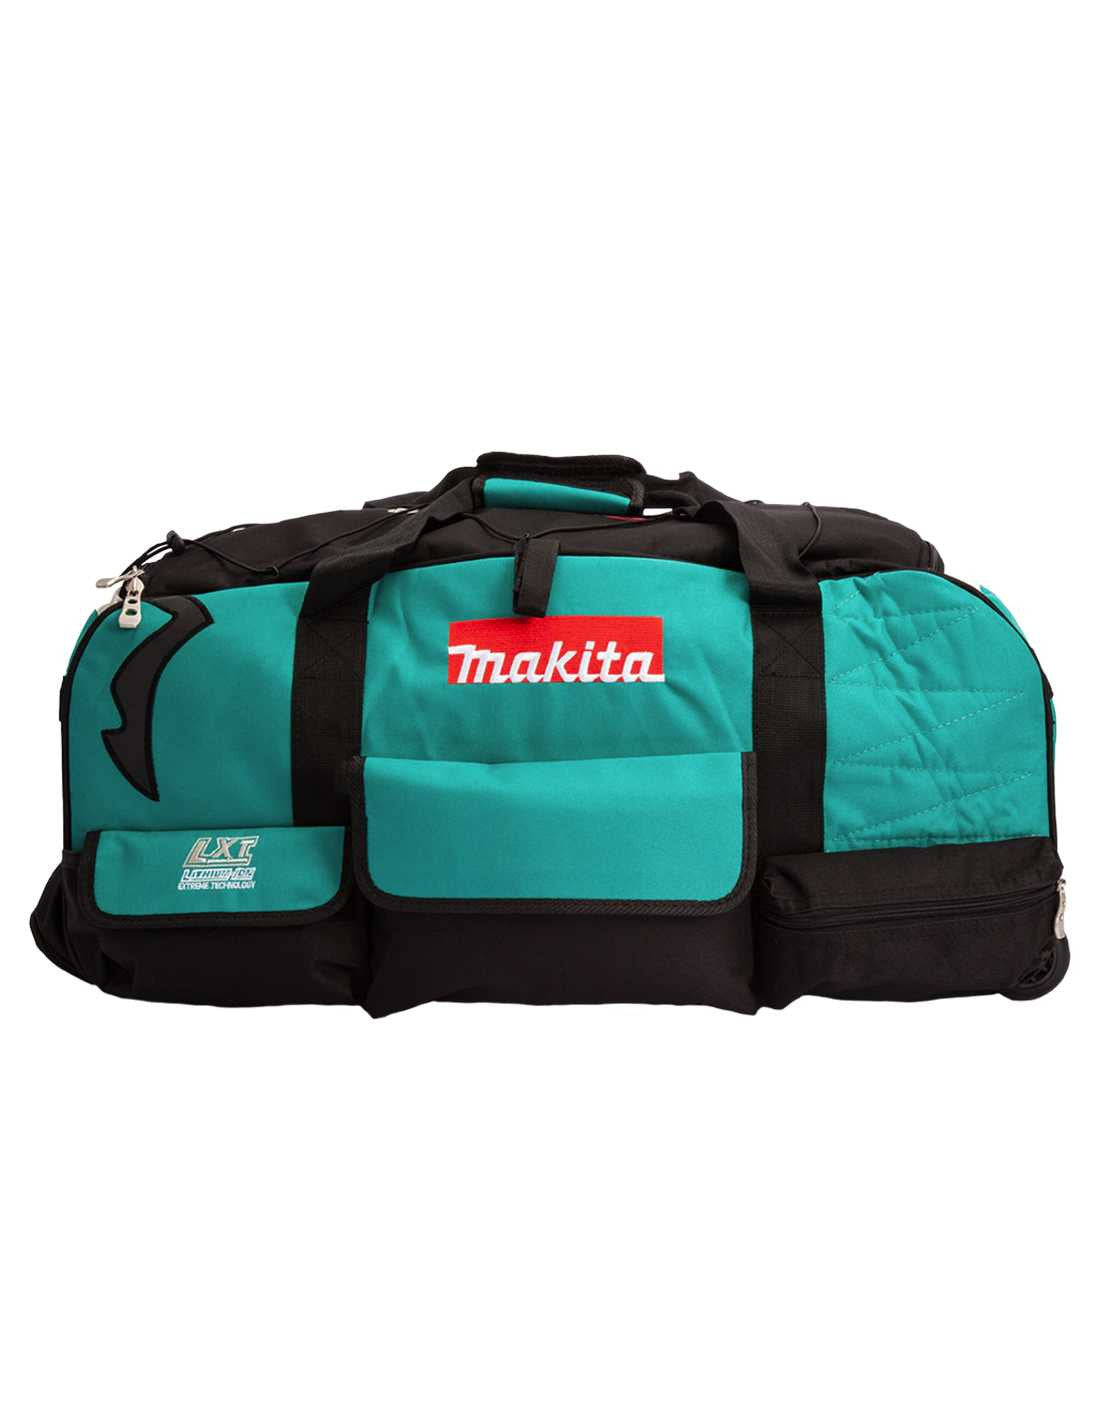 Kit Makita avec 7 outils + 3bat 5Ah + Chargeur DC18RC + 2 Sacs LXT600 DLX7482BL3